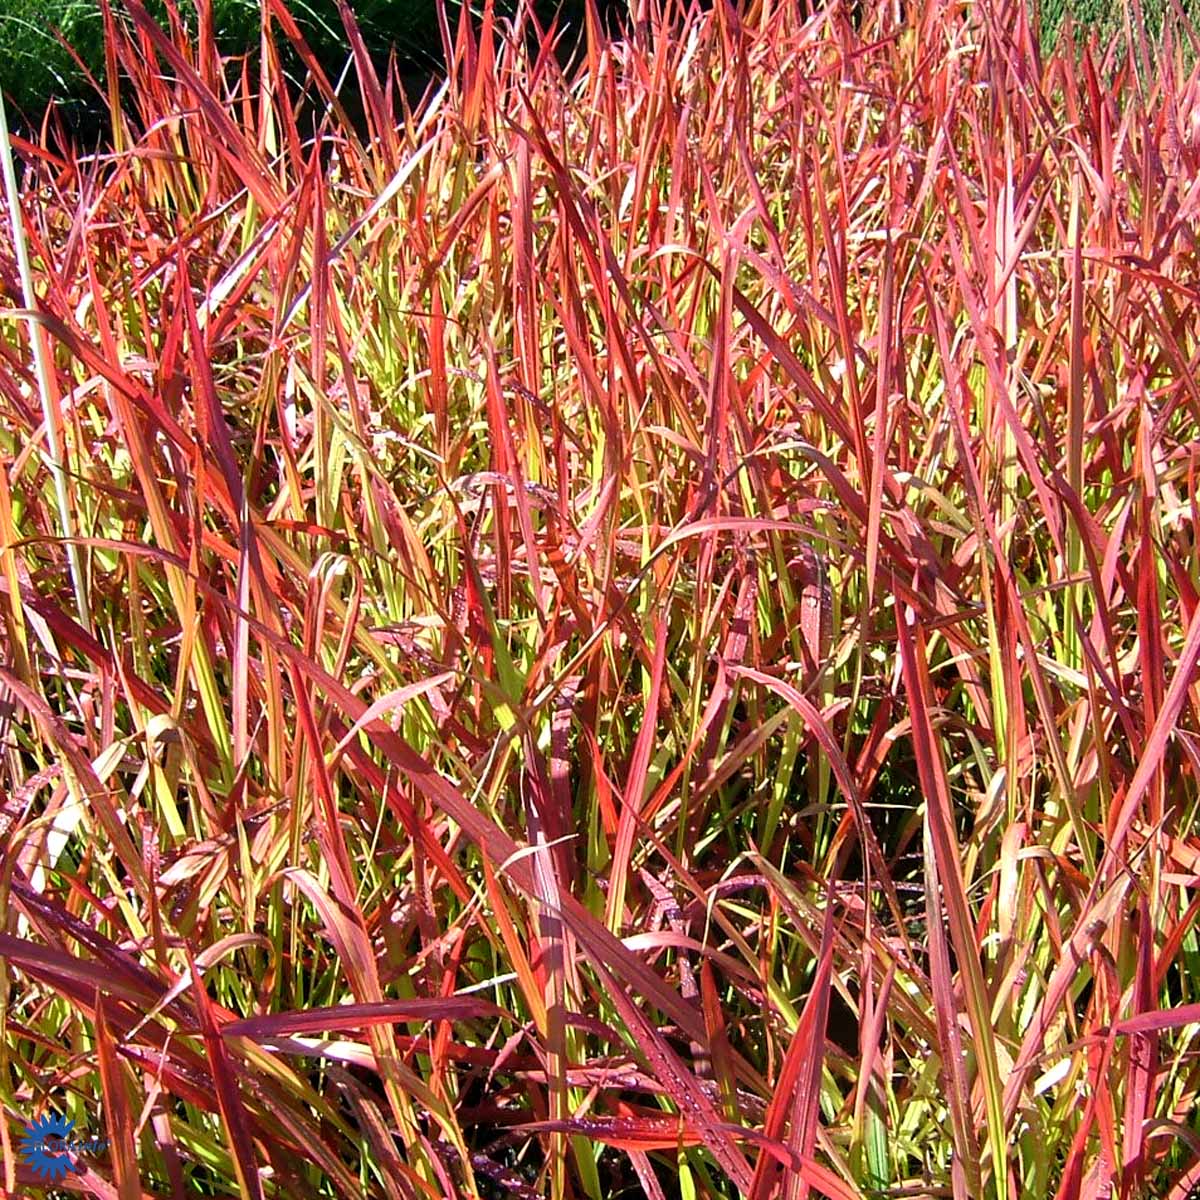 Japansk blodgræs — Imperata Cylindrica, "Red Baron"